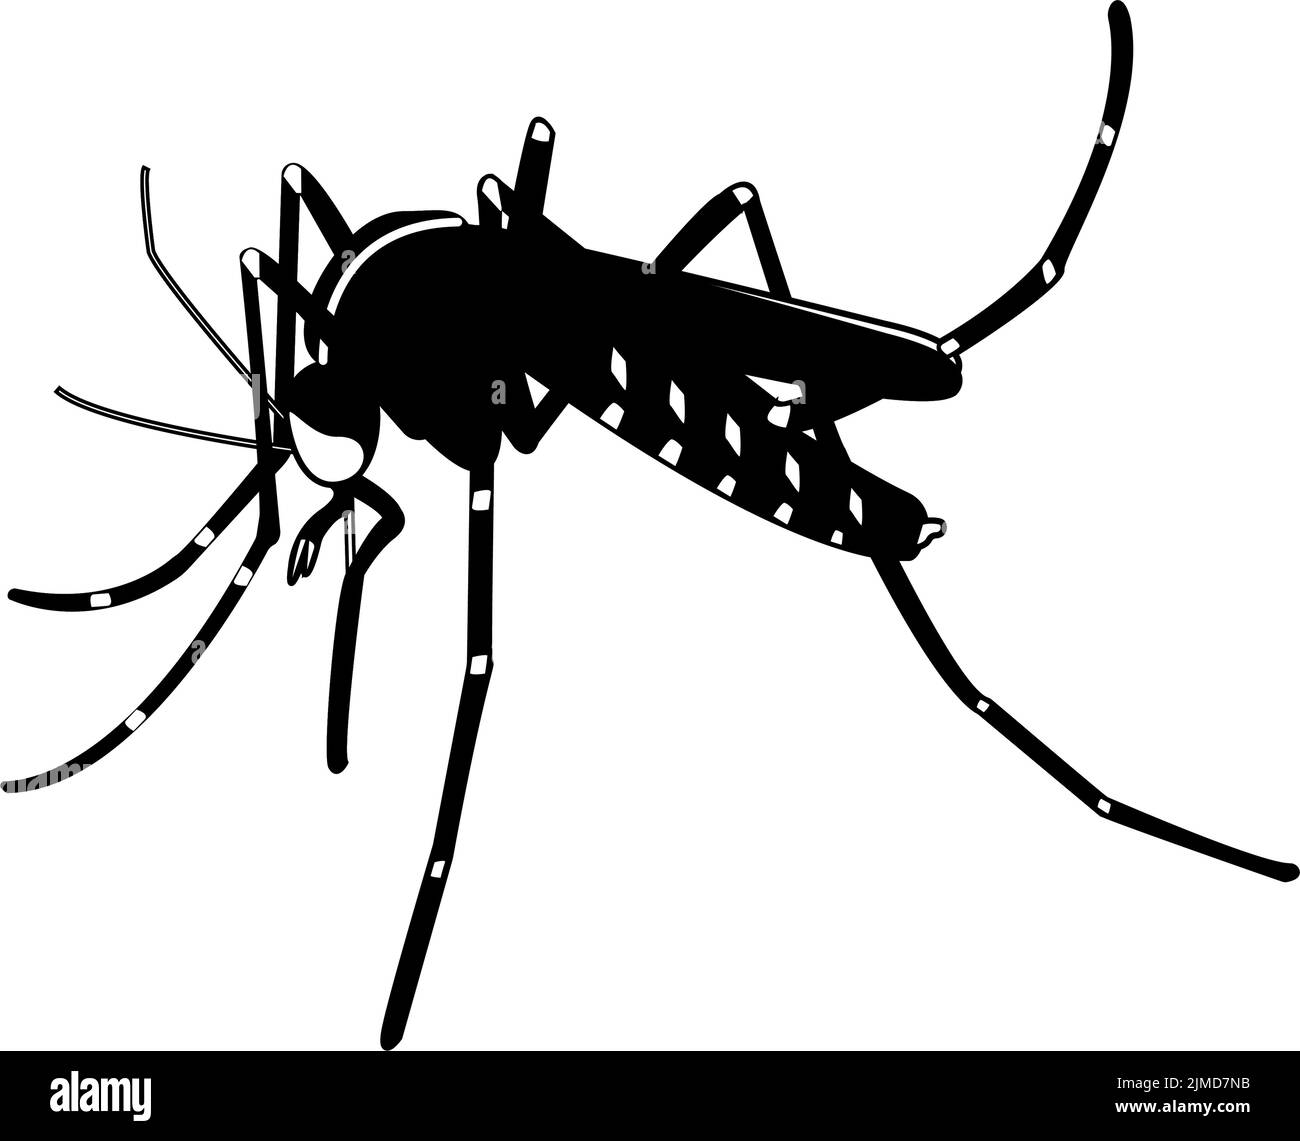 Illustrazione di una zanzara. Asian Tiger mosquito disegnare, immagine in bianco e nero. Vettore libero Illustrazione Vettoriale